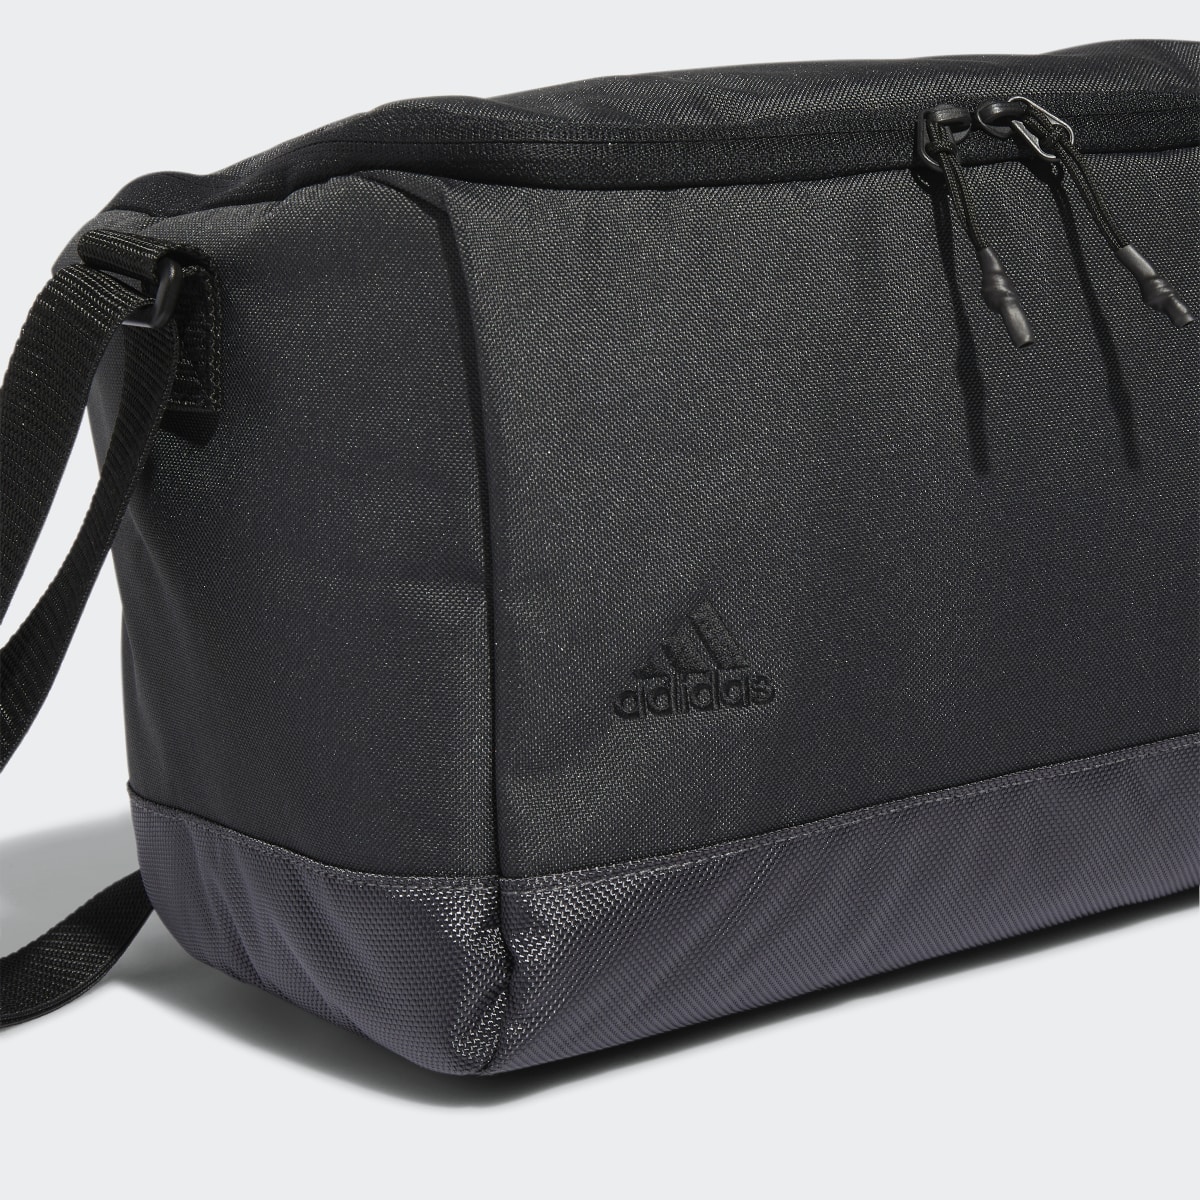 Adidas Golf Cooler Bag. 6